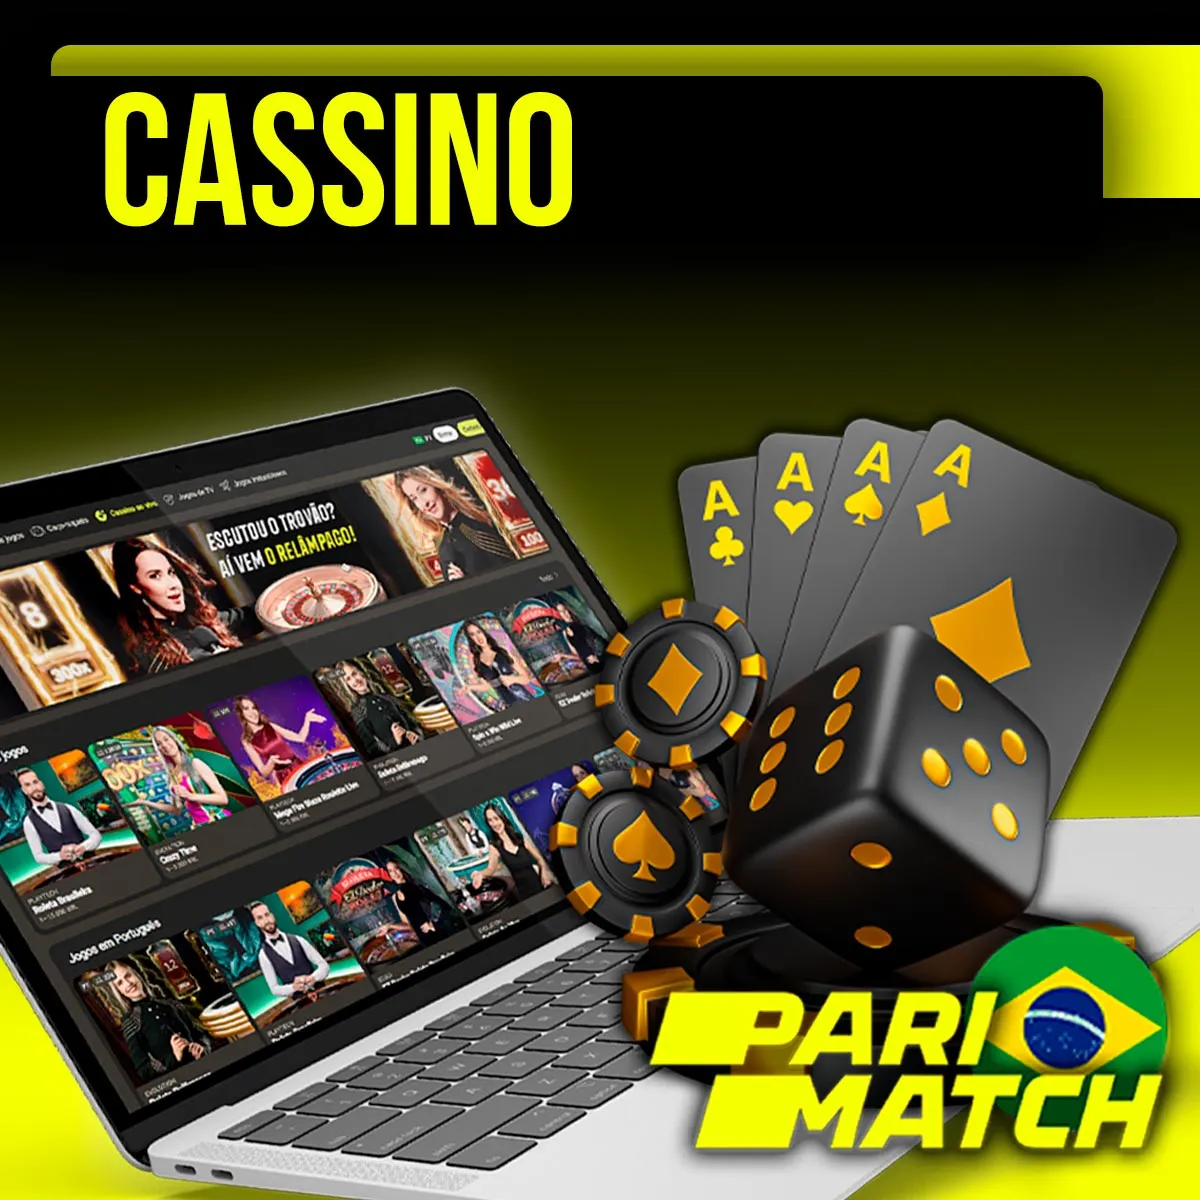 Enorme seleção de jogos de cassino na casa de apostas Parimatch no Brasil